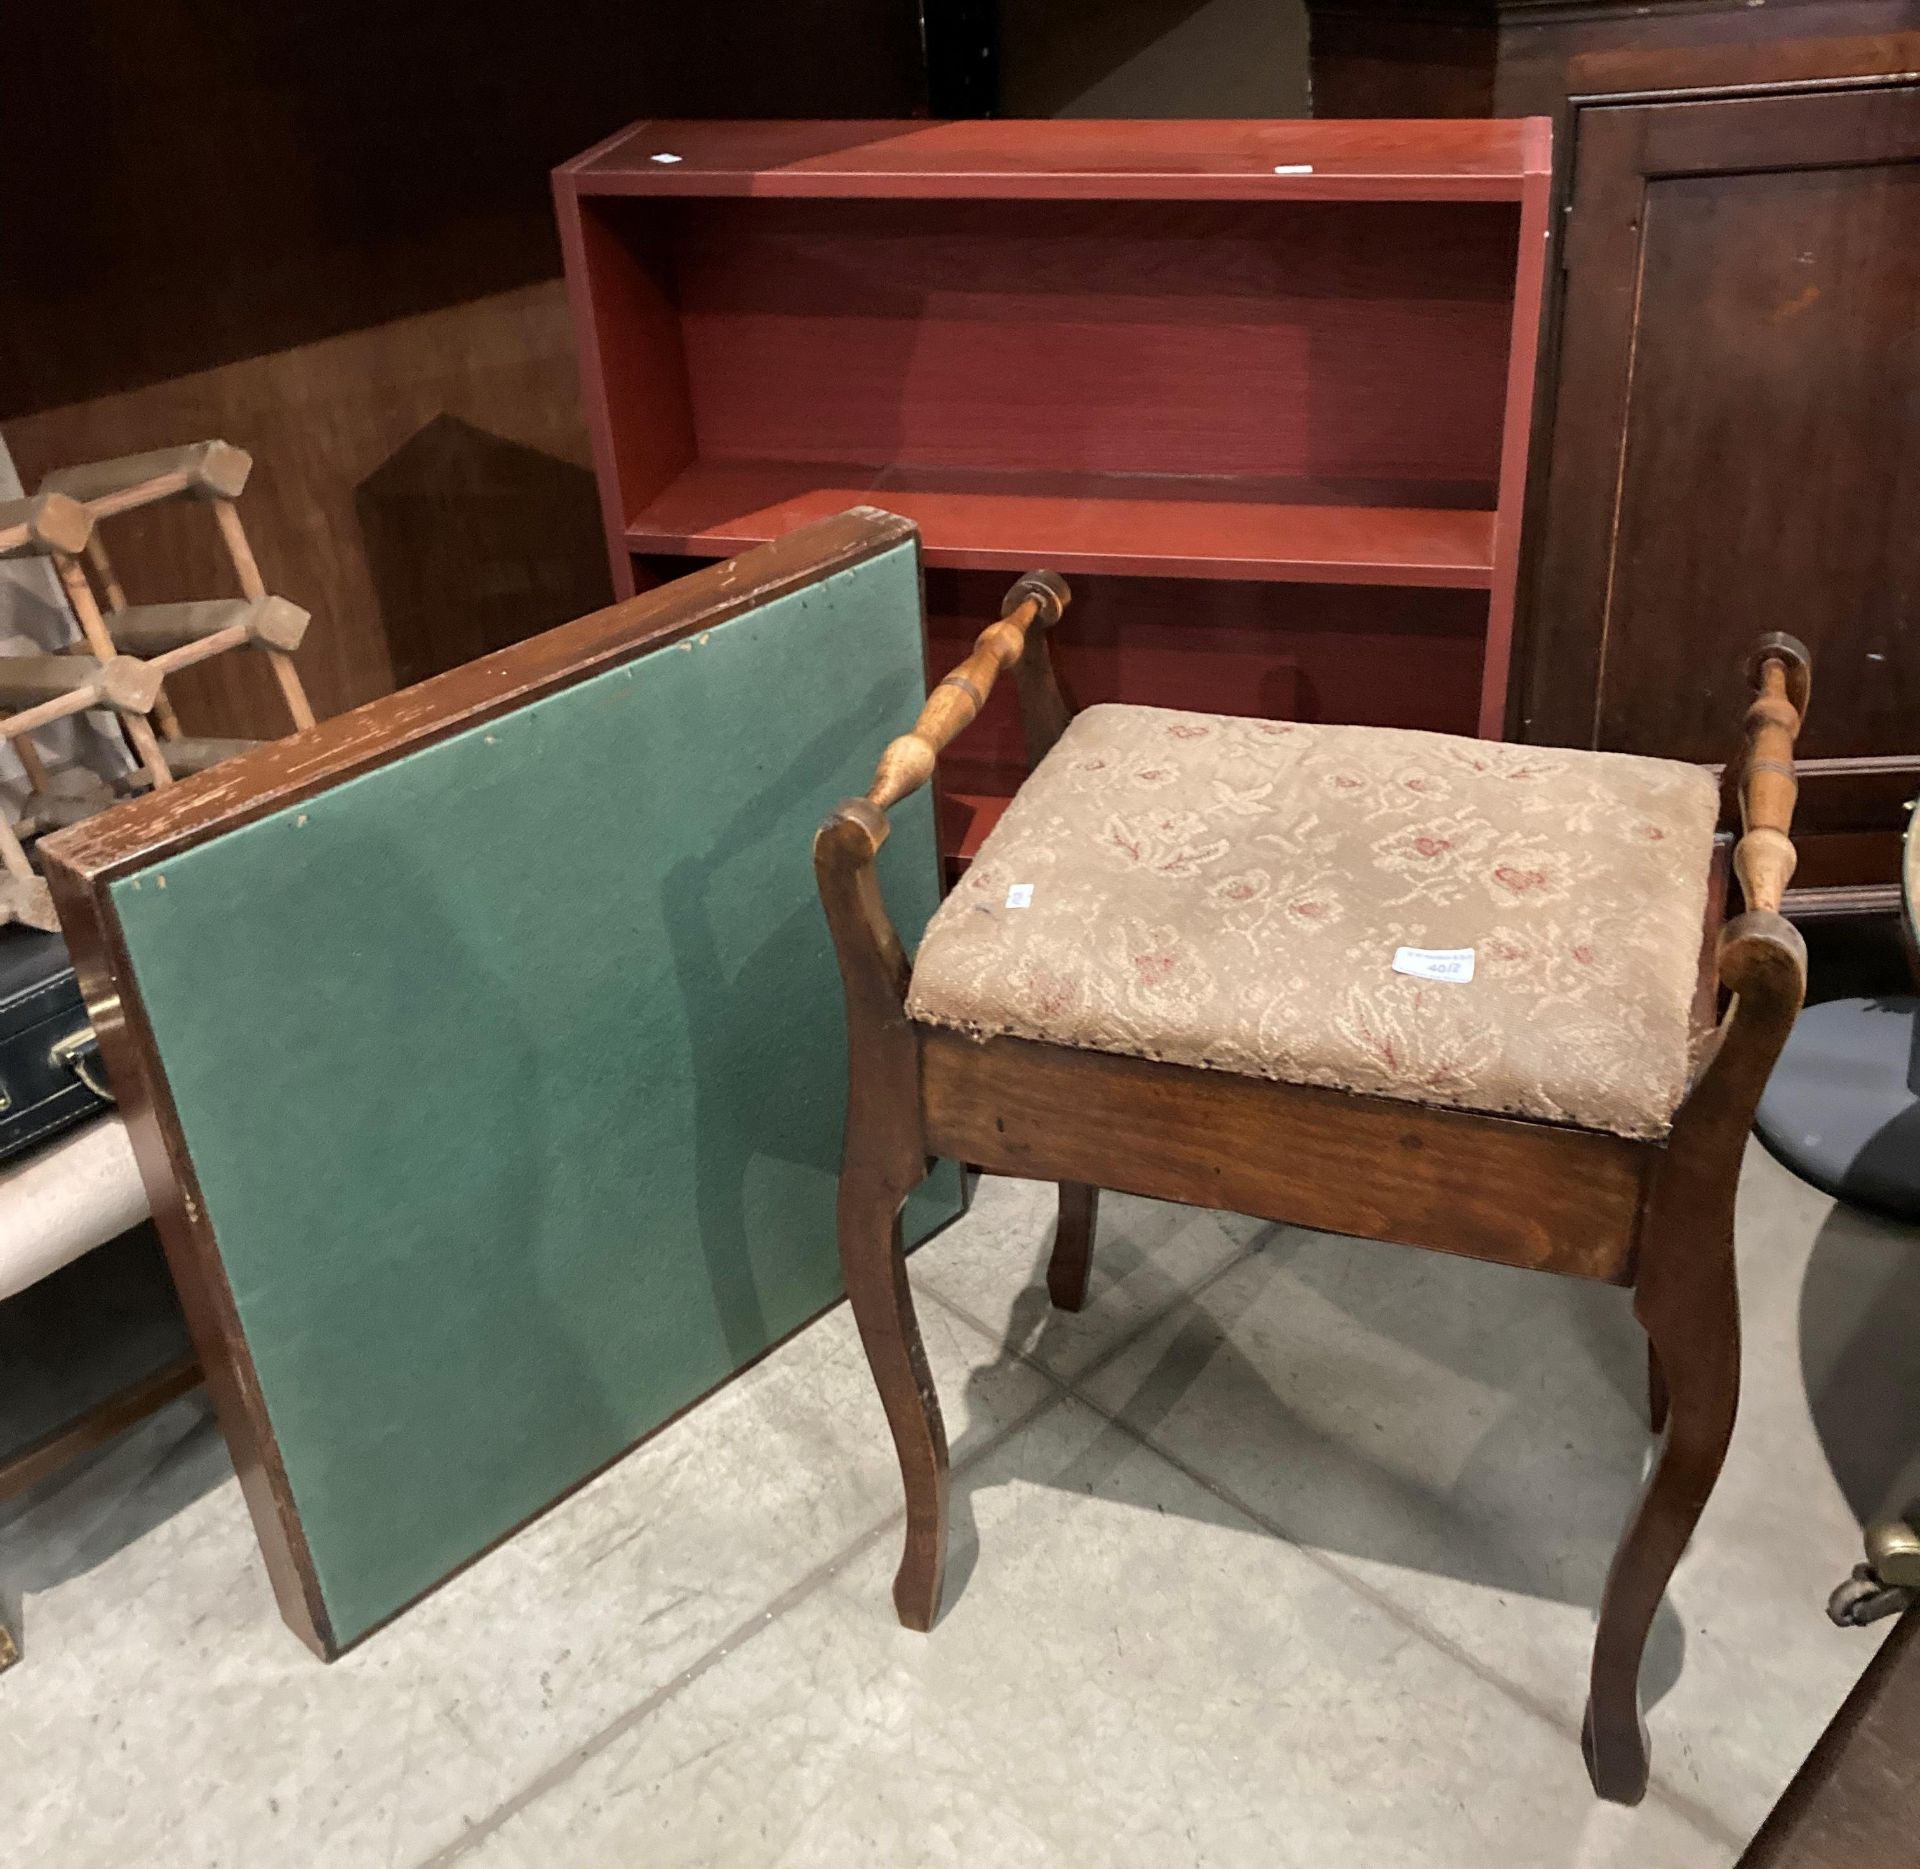 Three items - a piano stool,